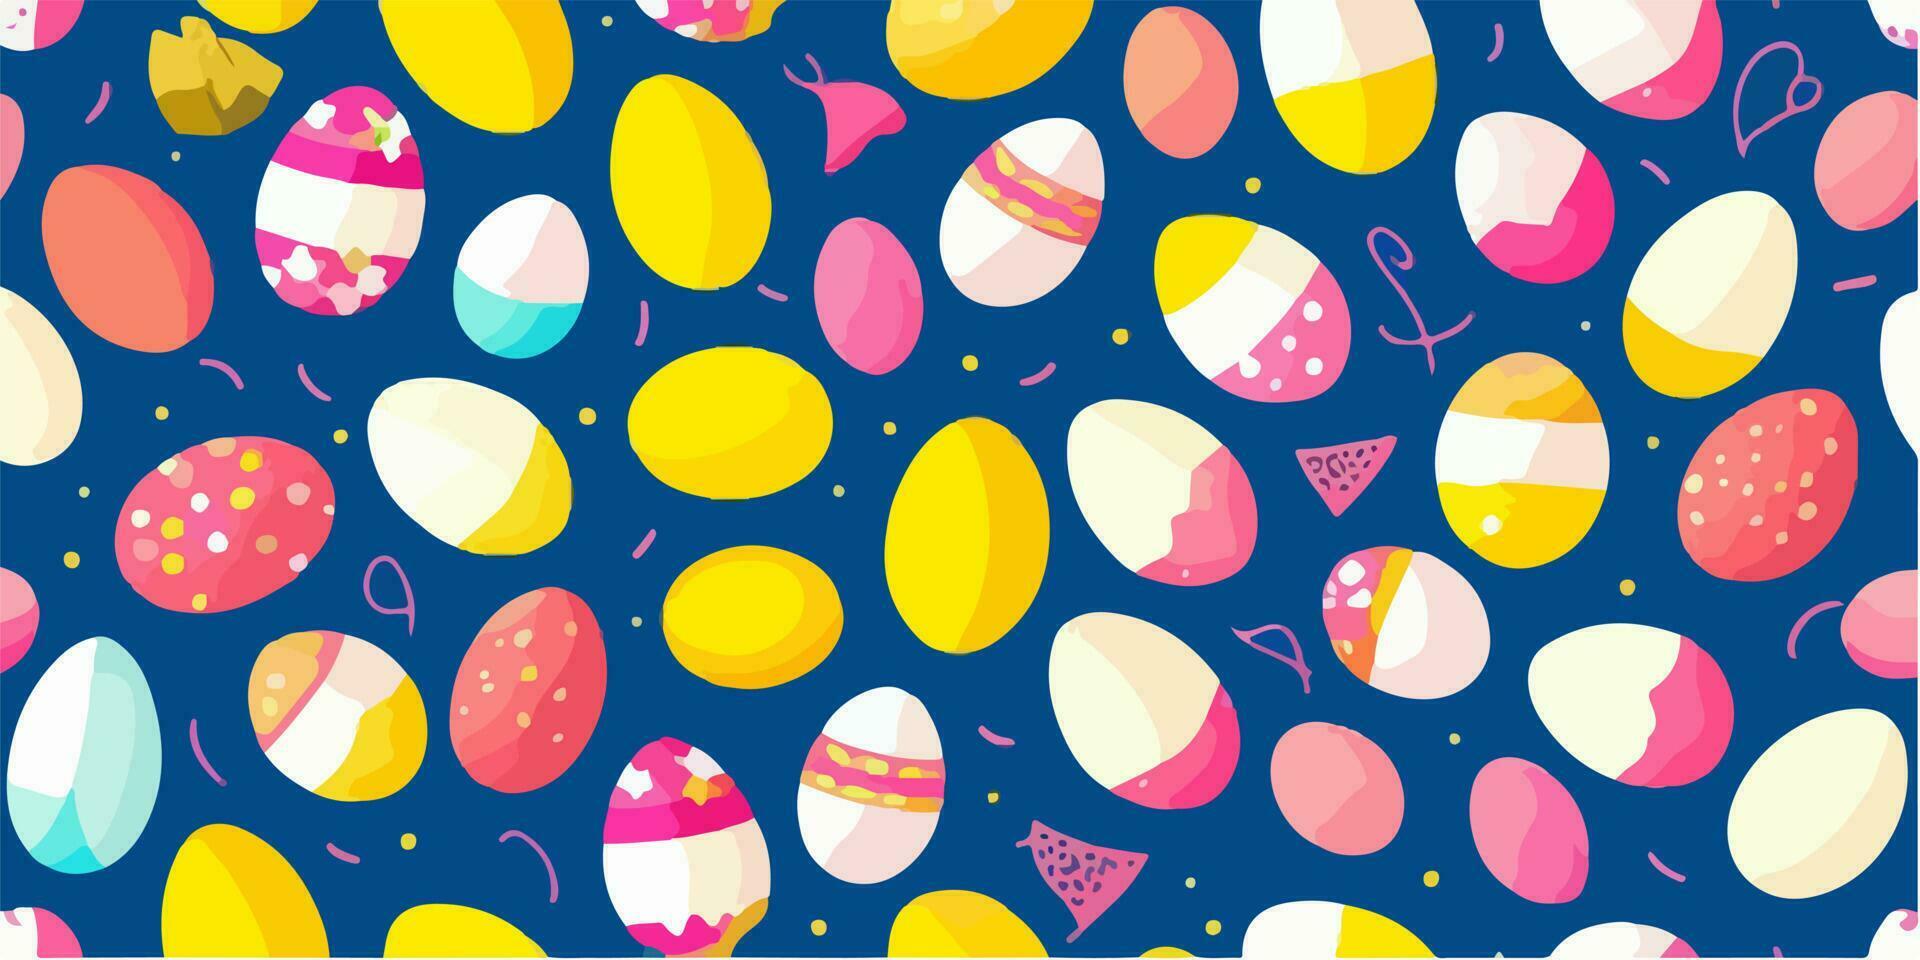 färgrik ljuv vektor illustration av påsk ägg